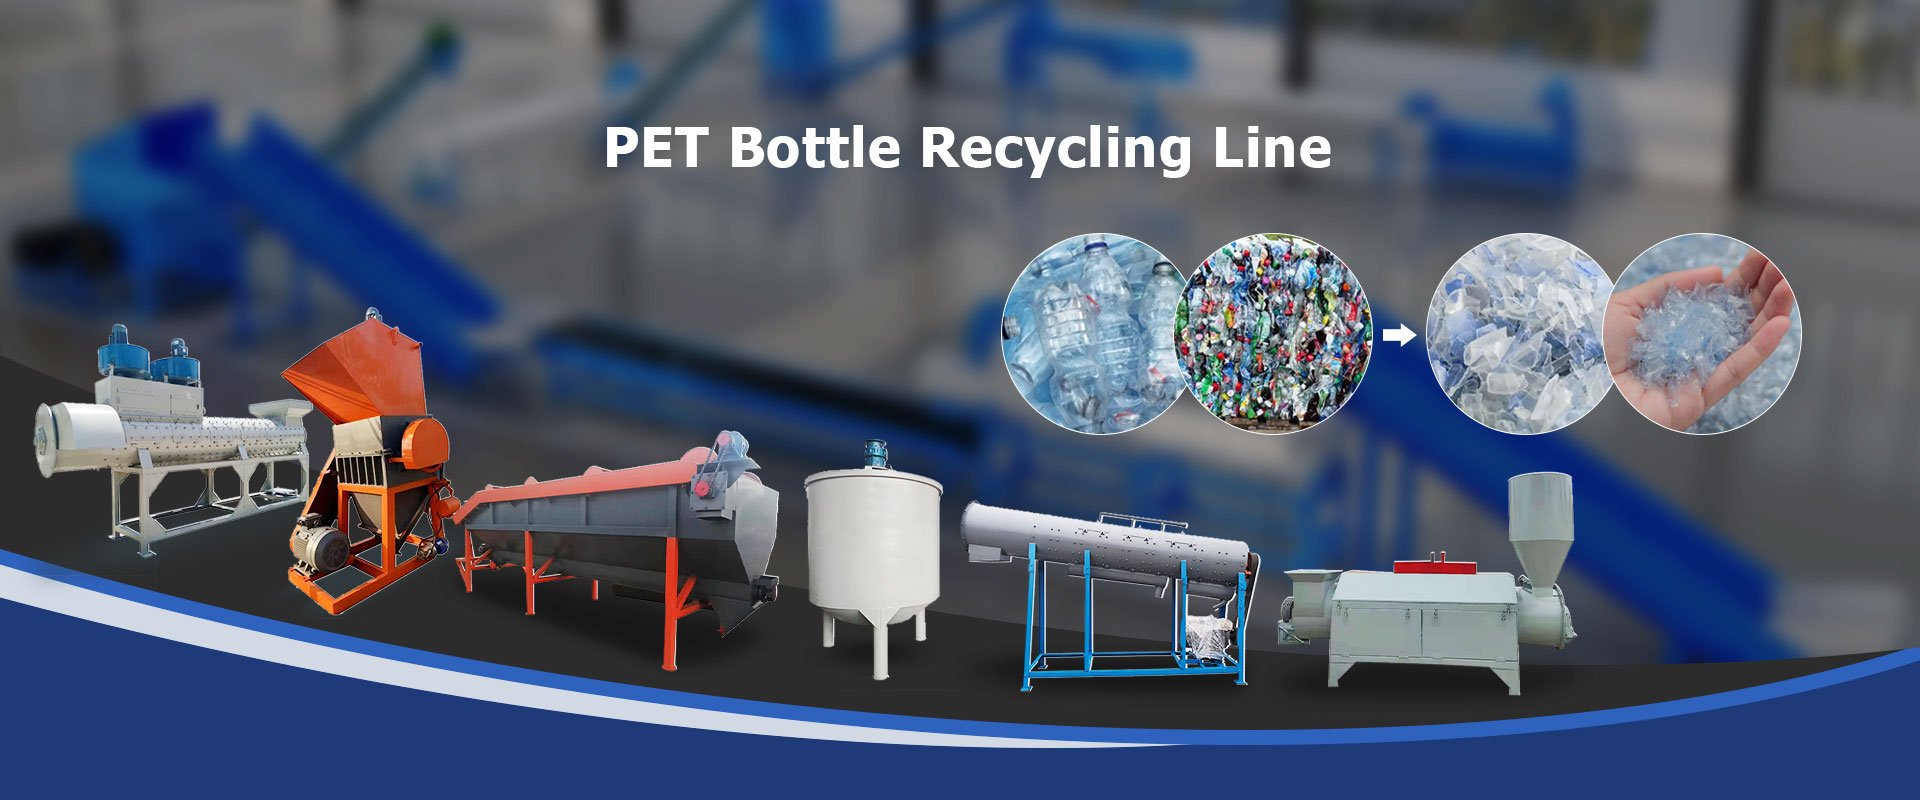 Linha de reciclagem de garrafas PET